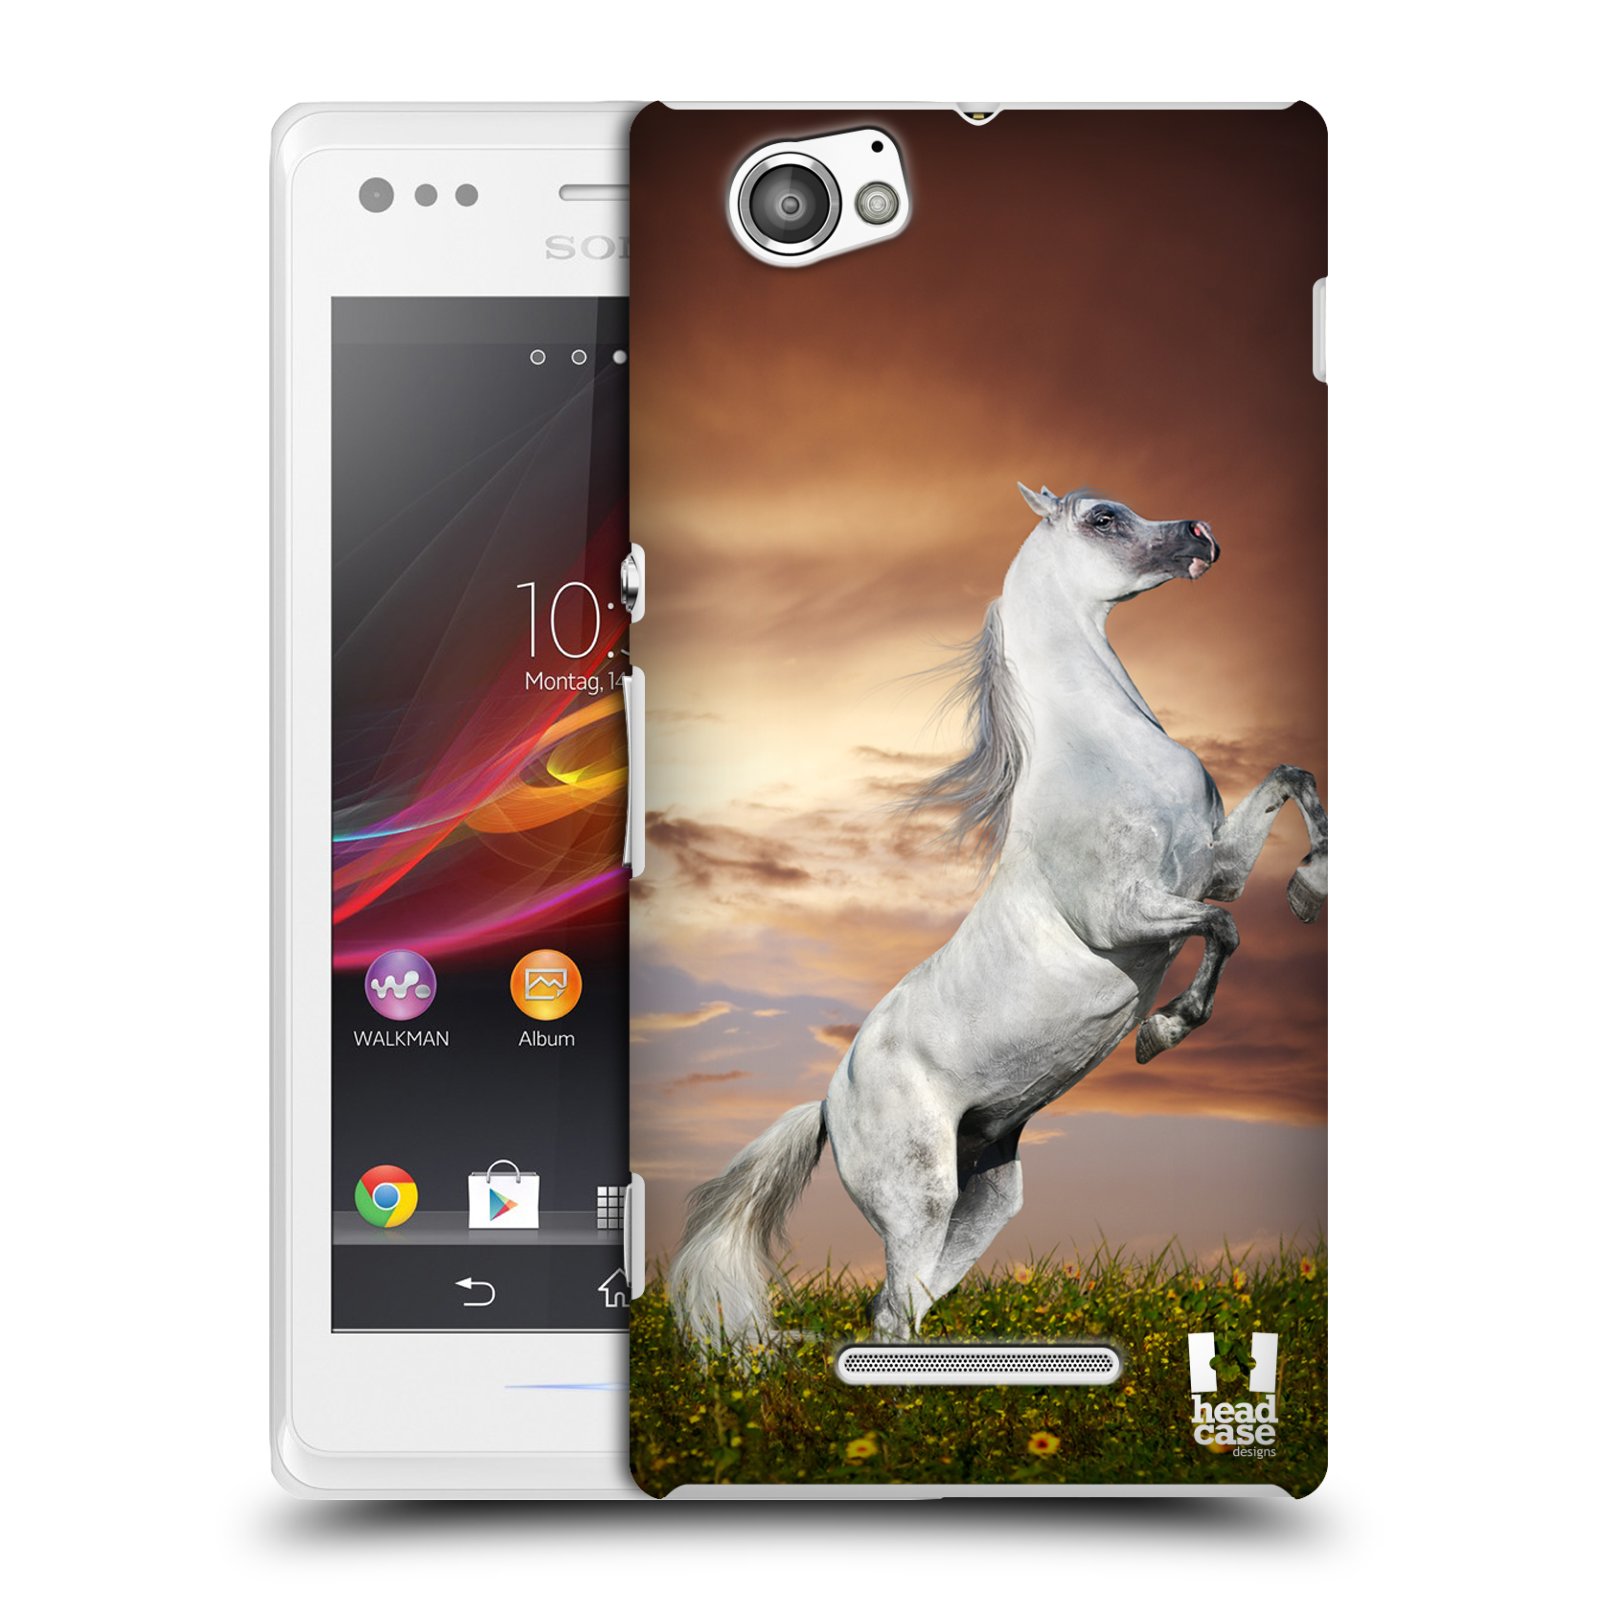 HEAD CASE plastový obal na mobil Sony Xperia M vzor Divočina, Divoký život a zvířata foto DIVOKÝ KŮŇ MUSTANG BÍLÁ